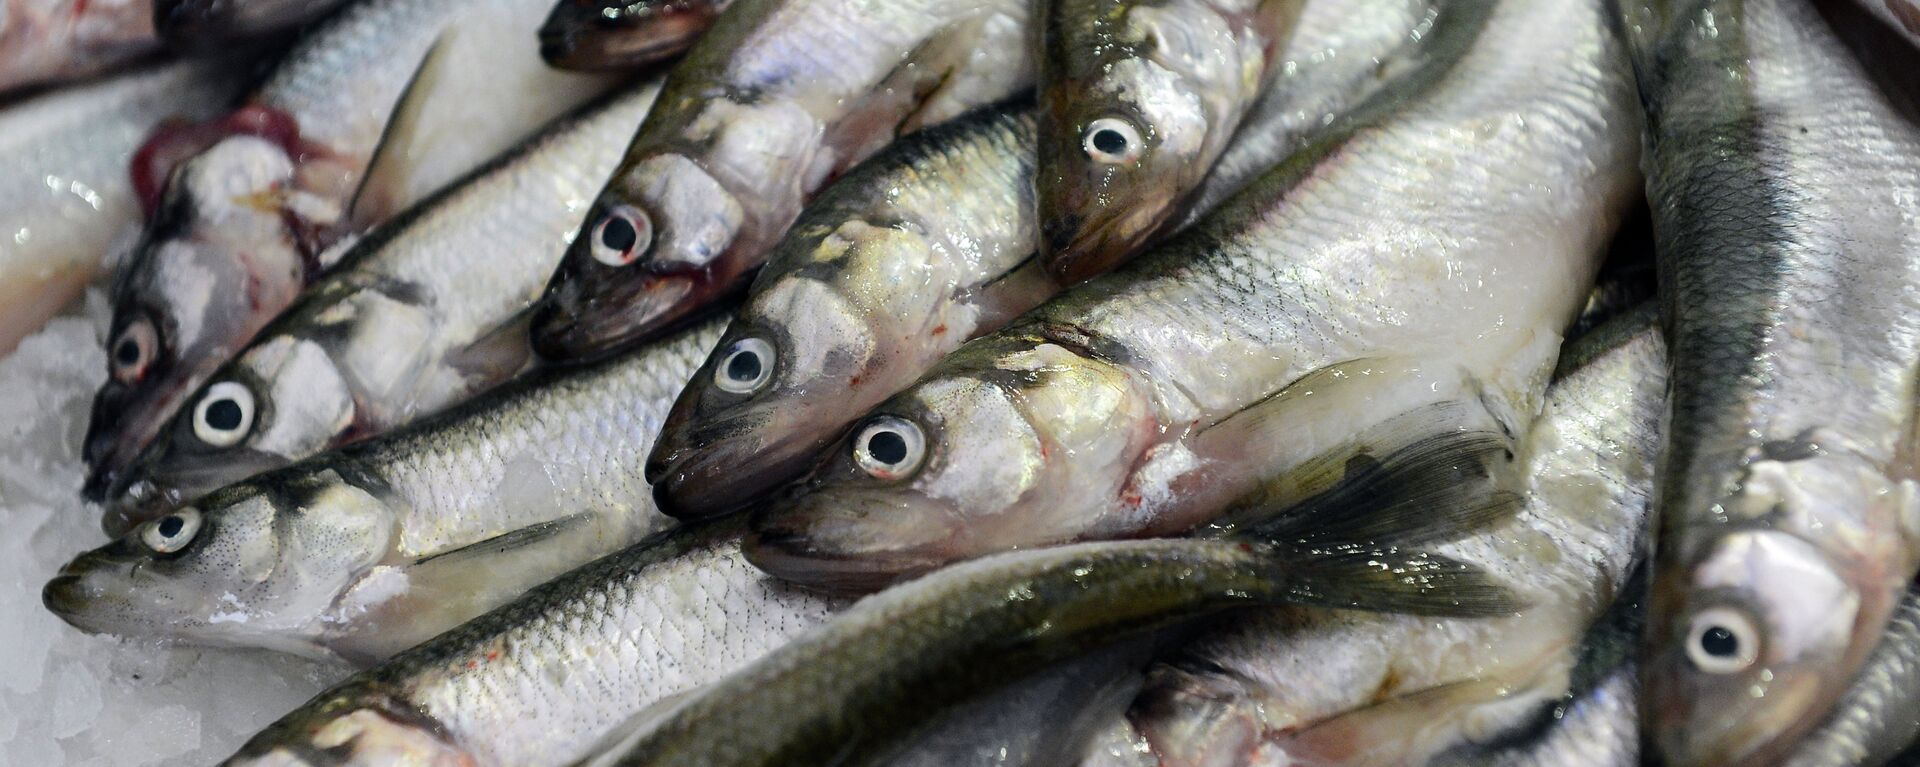 Све врсте риба садрже драгоцене витамине. - Sputnik Србија, 1920, 04.08.2021